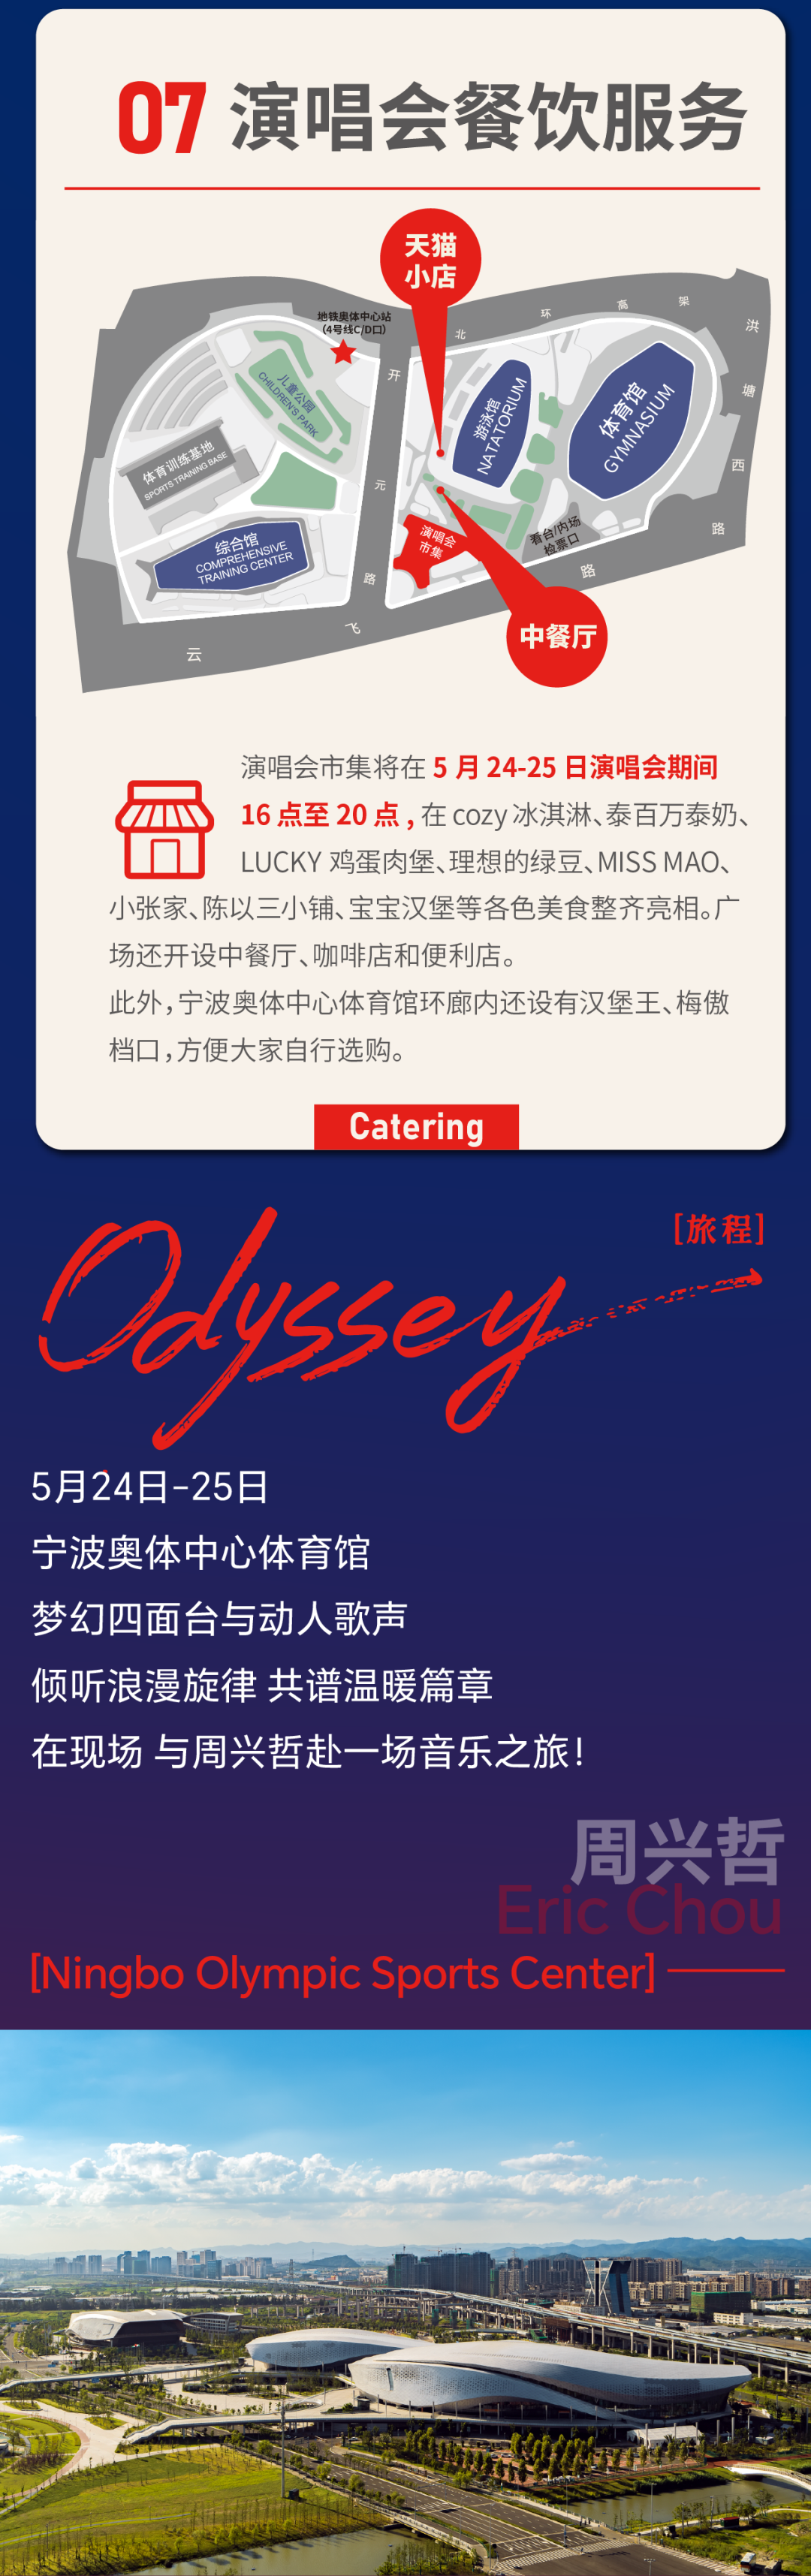 演唱会攻略｜2024周兴哲Odyssey（旅程）巡回演唱会宁波站